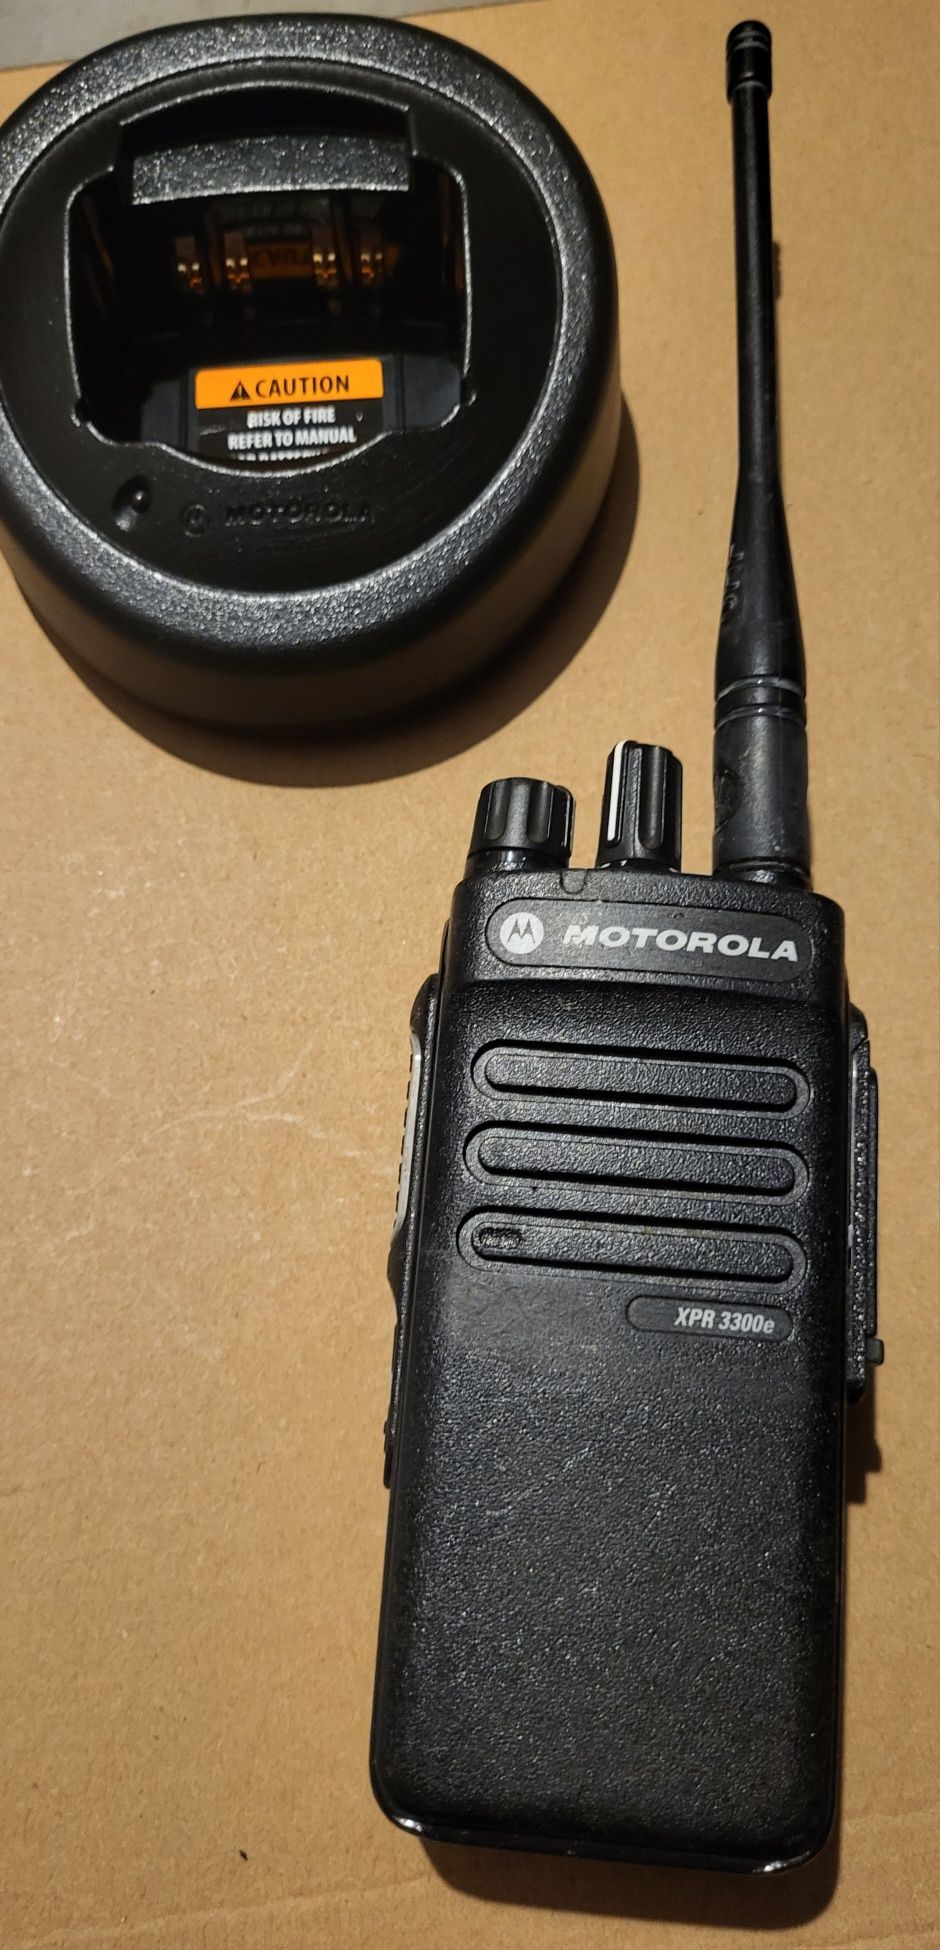 Radiotelefon Motorola XPR 3300e pracujący w paśmie UHF